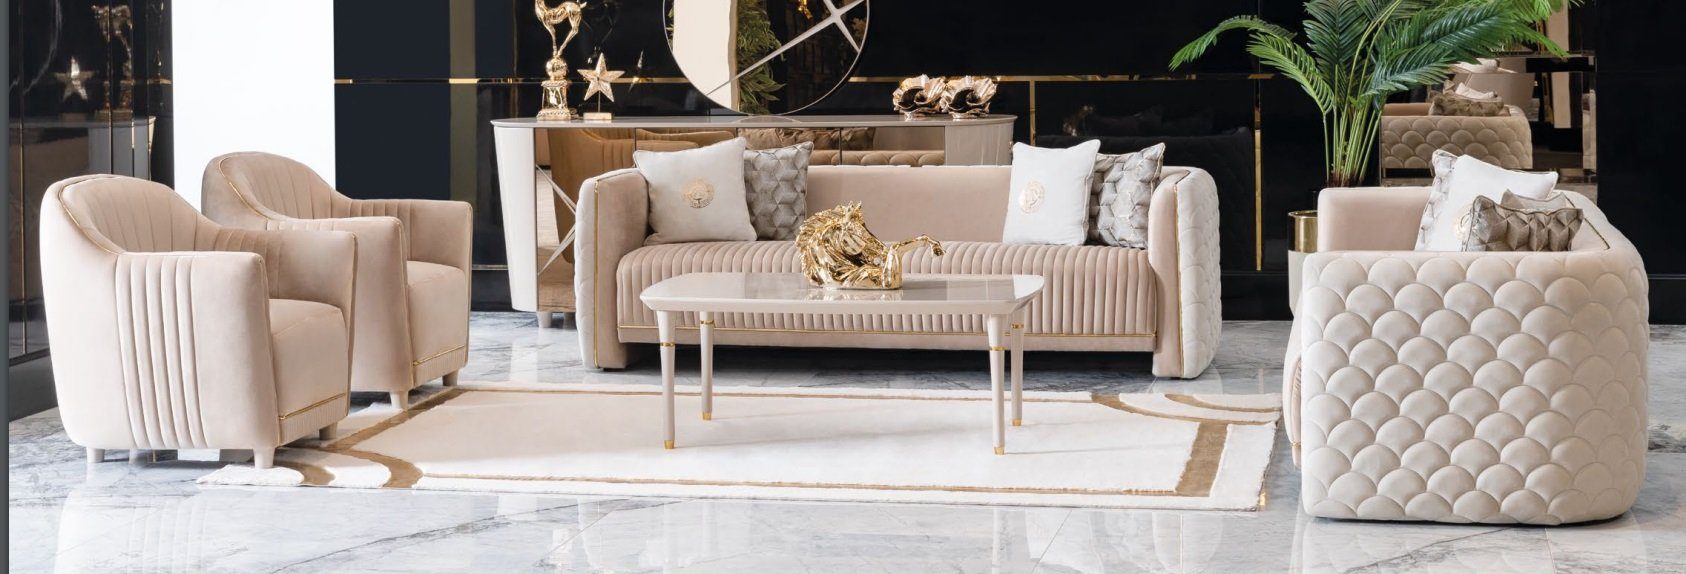 Sofa Beige Luxus Sityer Made in Holy JVmoebel Europe Couchgarnitur Samt Sofas, Couchen 3+3+1+1